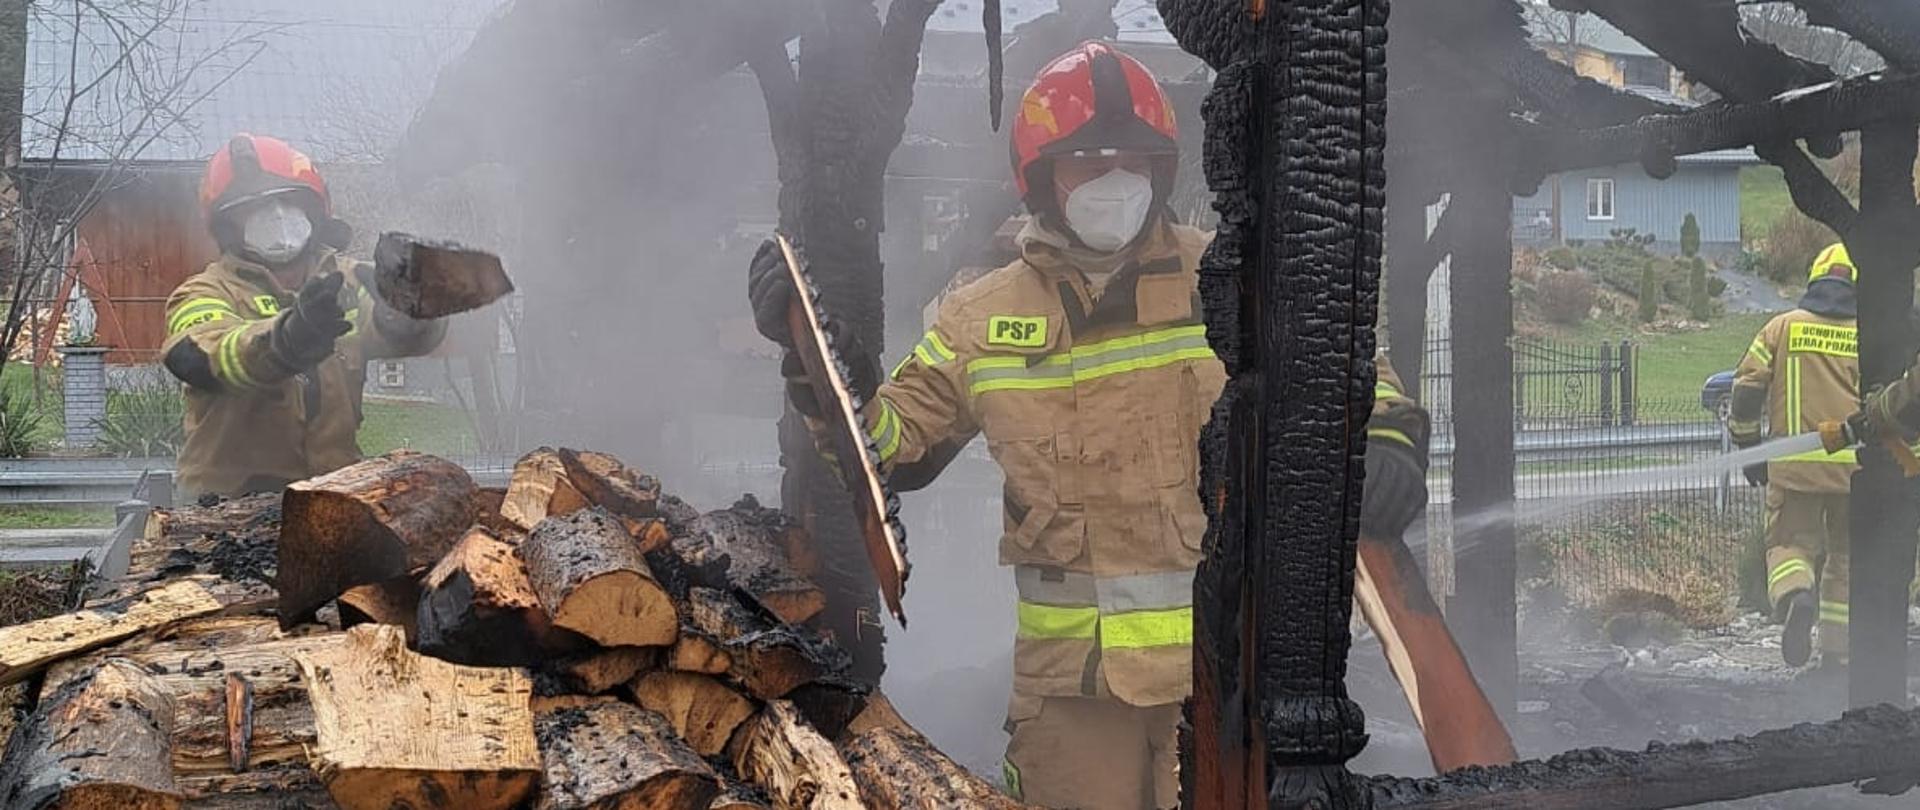 Kolorowa fotografia wykonana w pochmurny dzień. Przedstawia strażaków ubranych w ubrania specjalne w hełmach i maseczkach pracujących przy rozbiórce spalonej altany. W tle budynki mieszkalne.